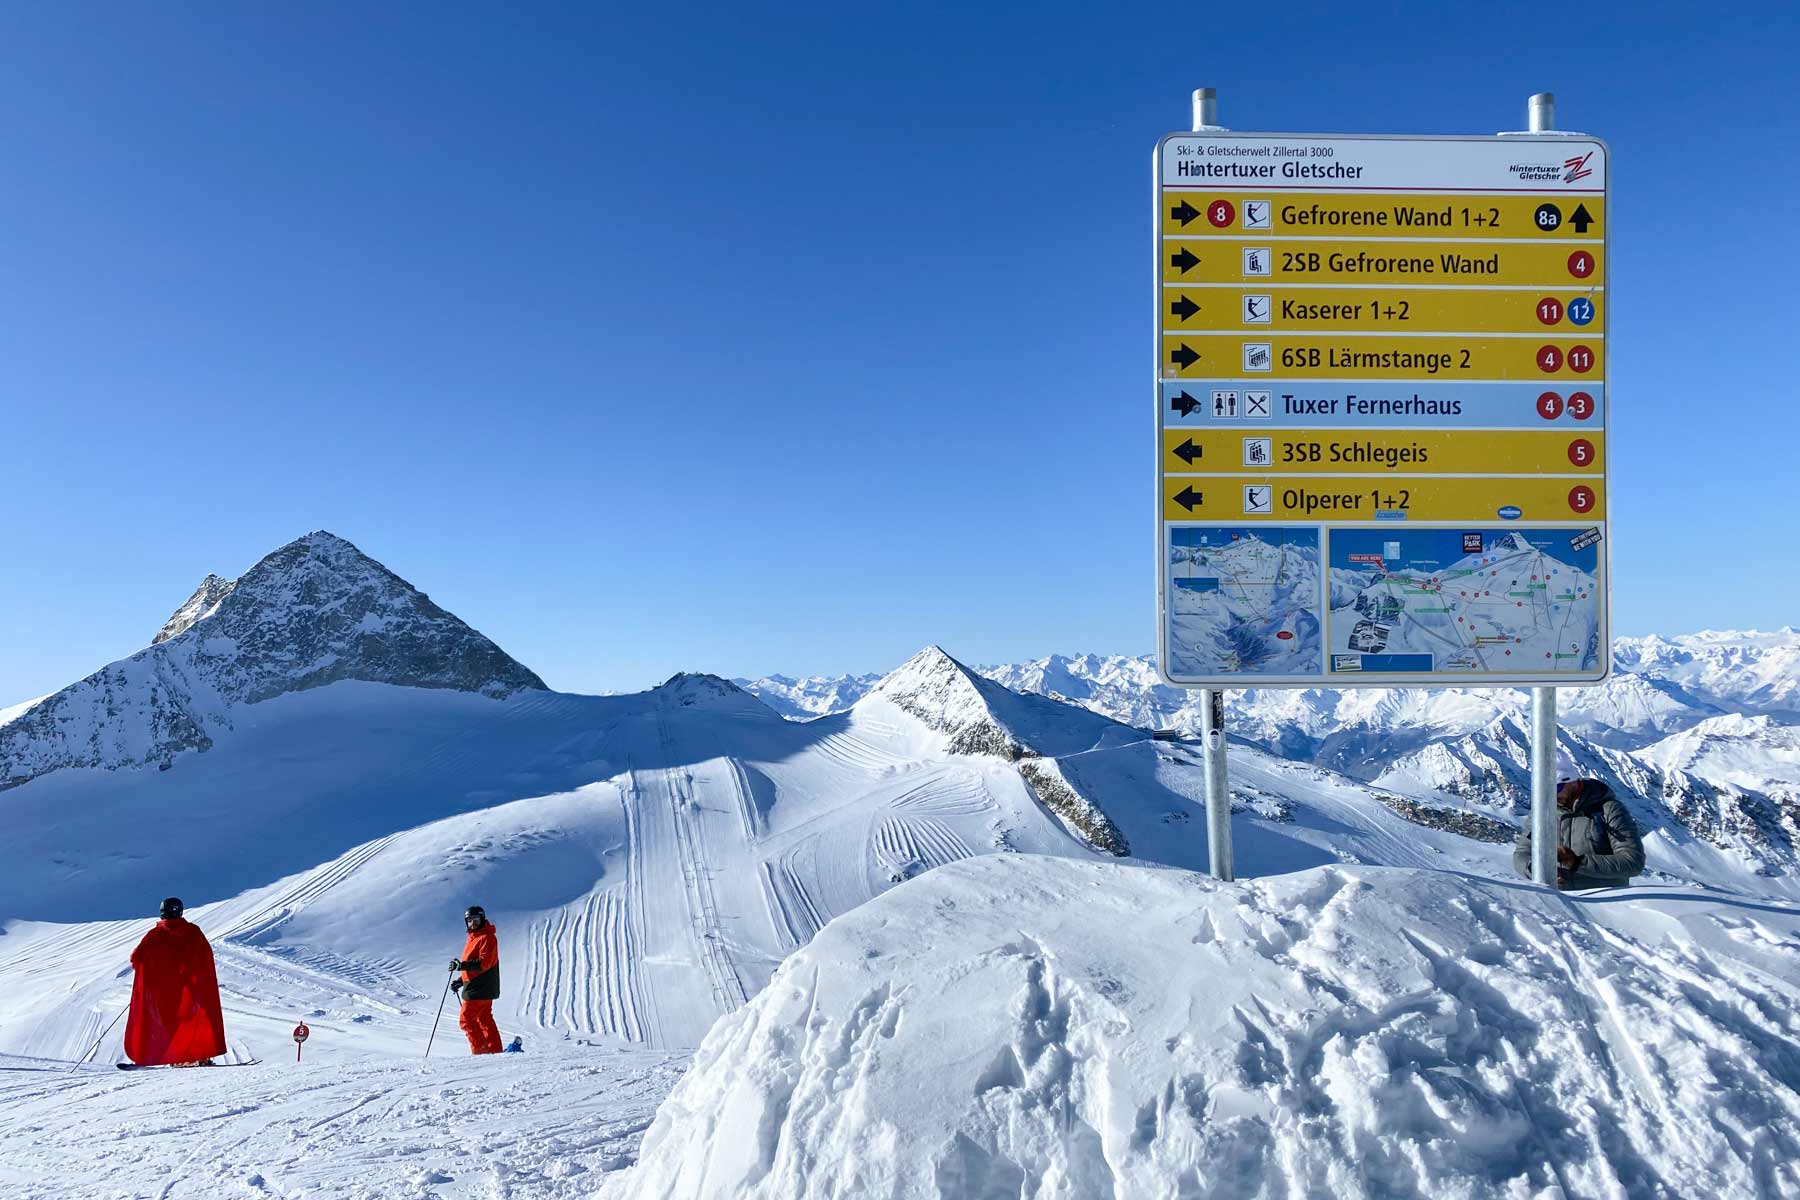 Meest sneeuwzekere skigebied in Oostenrijk Hintertuxer Gletscher